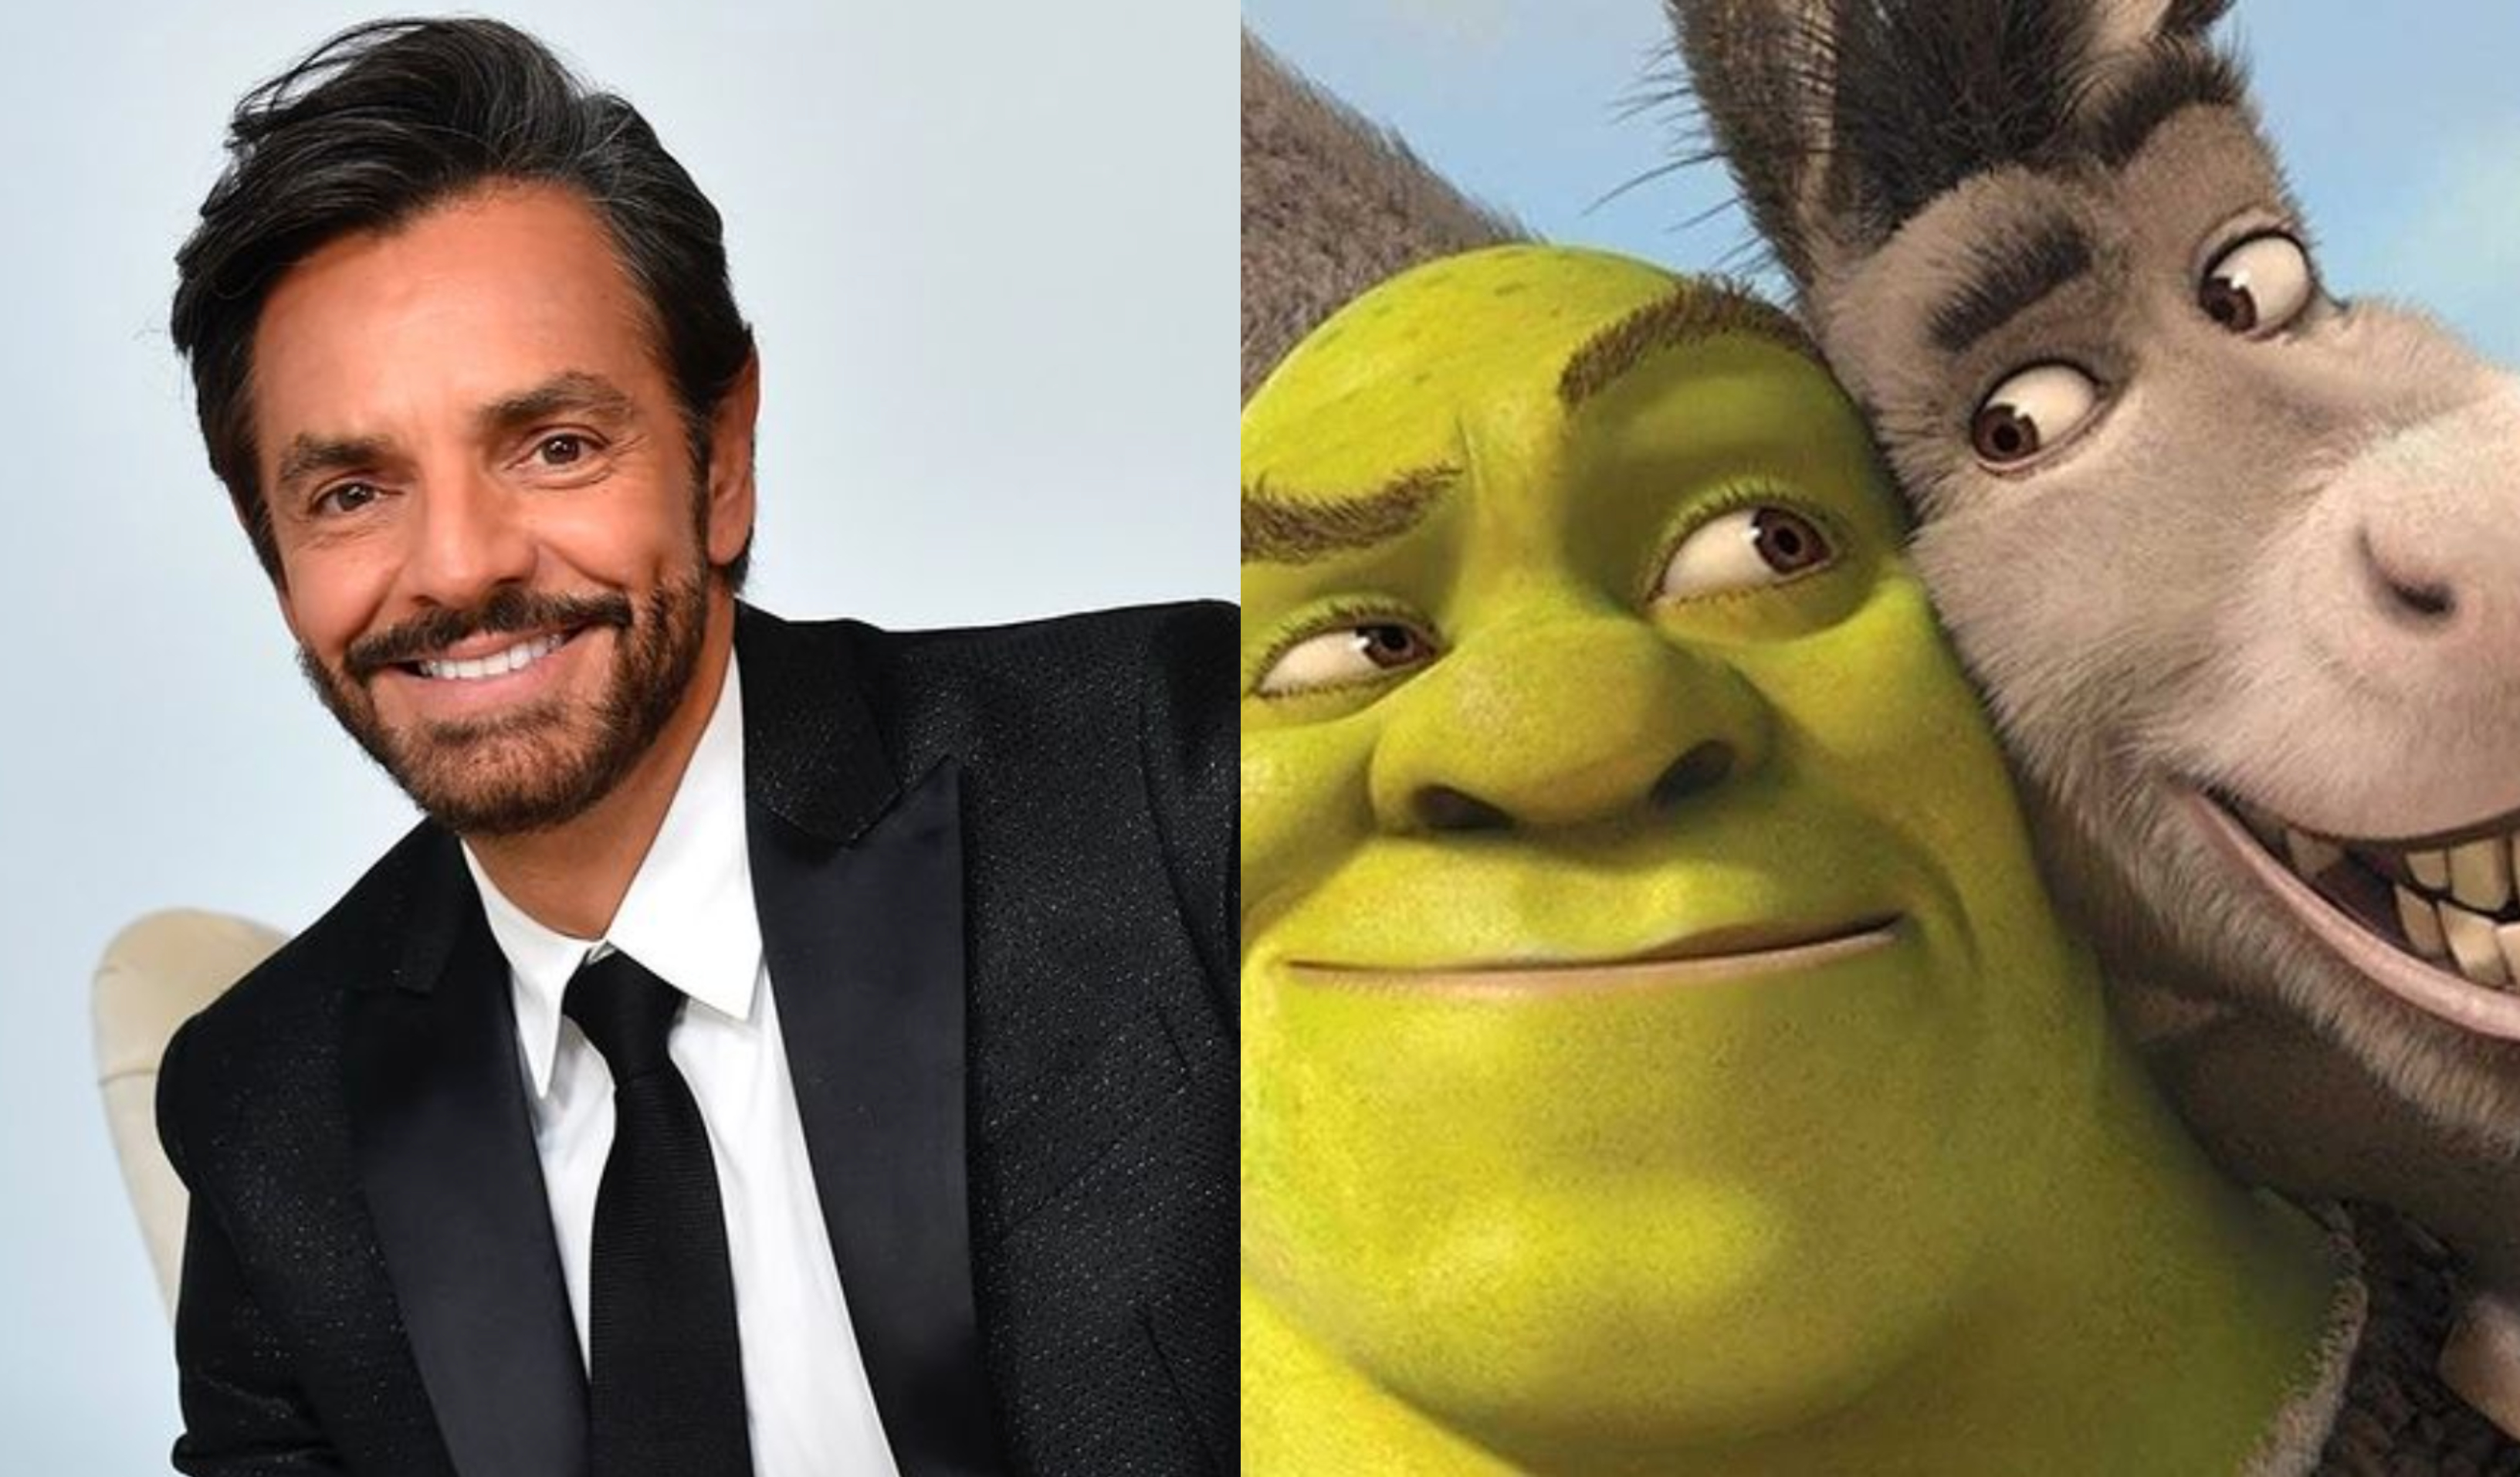 Eugenio Derbez fue el encargado de doblar la voz de Burro en las películas de Shrek. (Foto Prensa Libre: @ederbez/Instagram y Dreamworks)